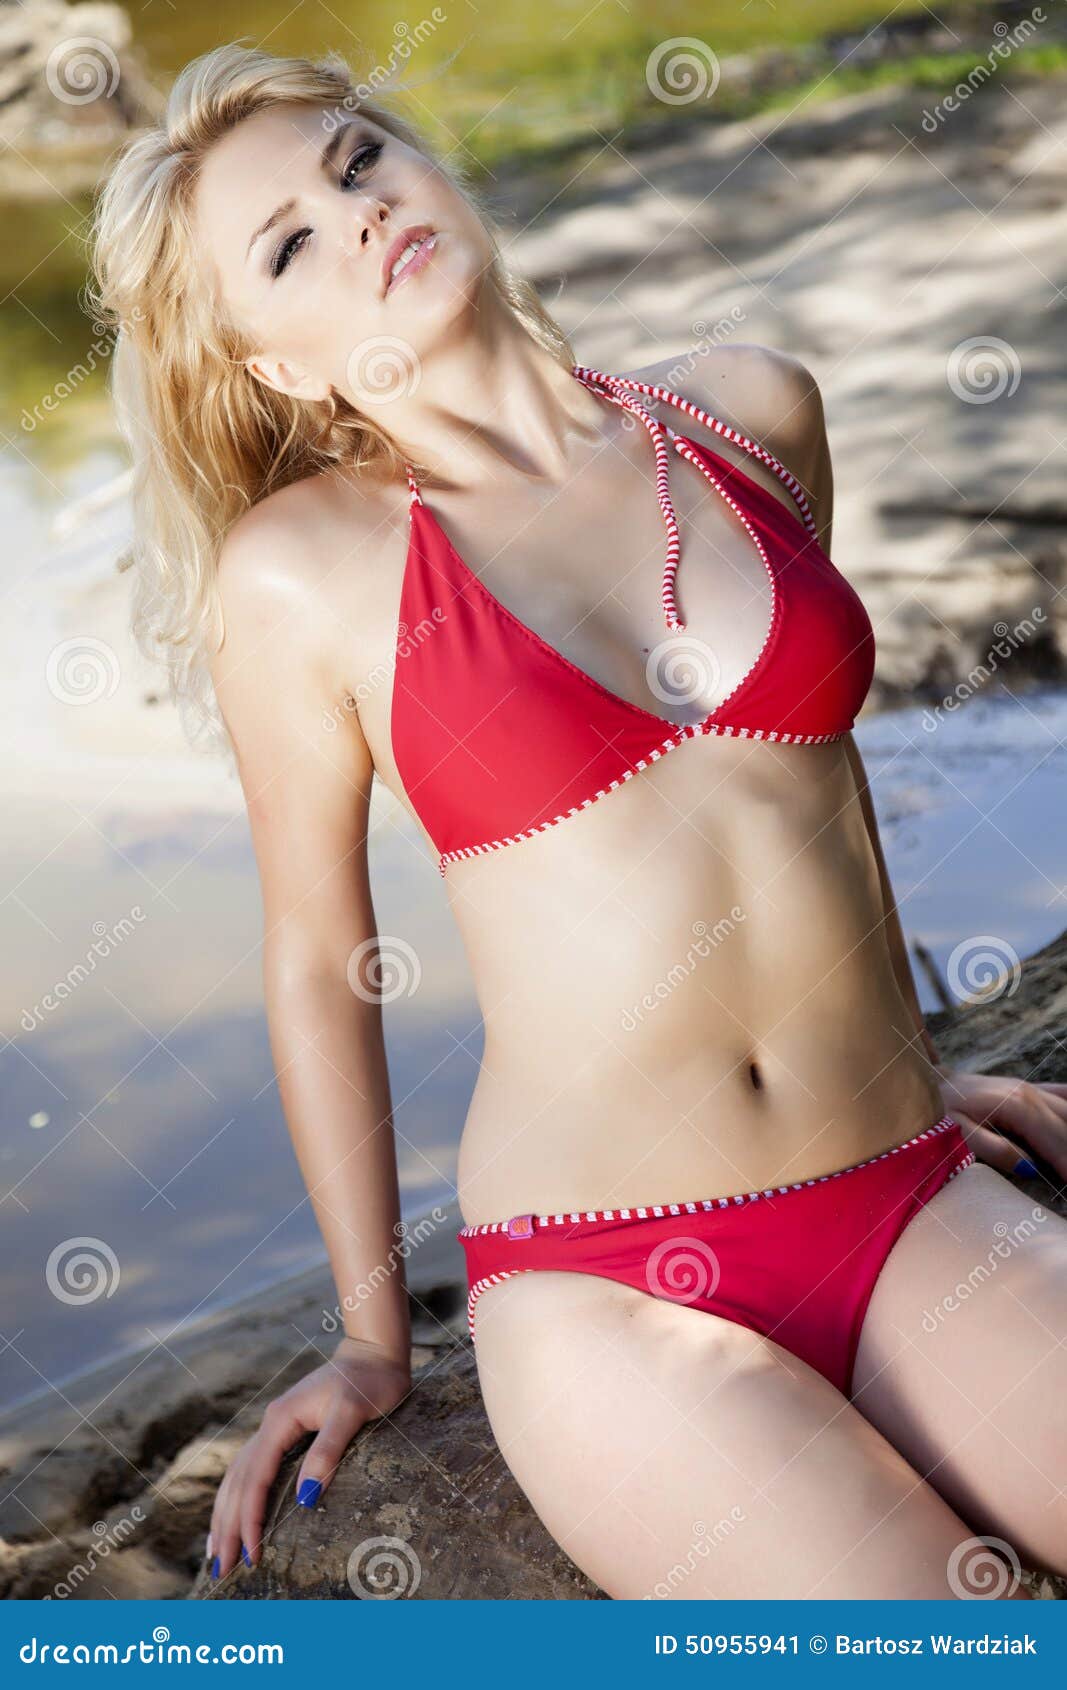 Beautiful Blonde Woman in Red Bikini Stock Image